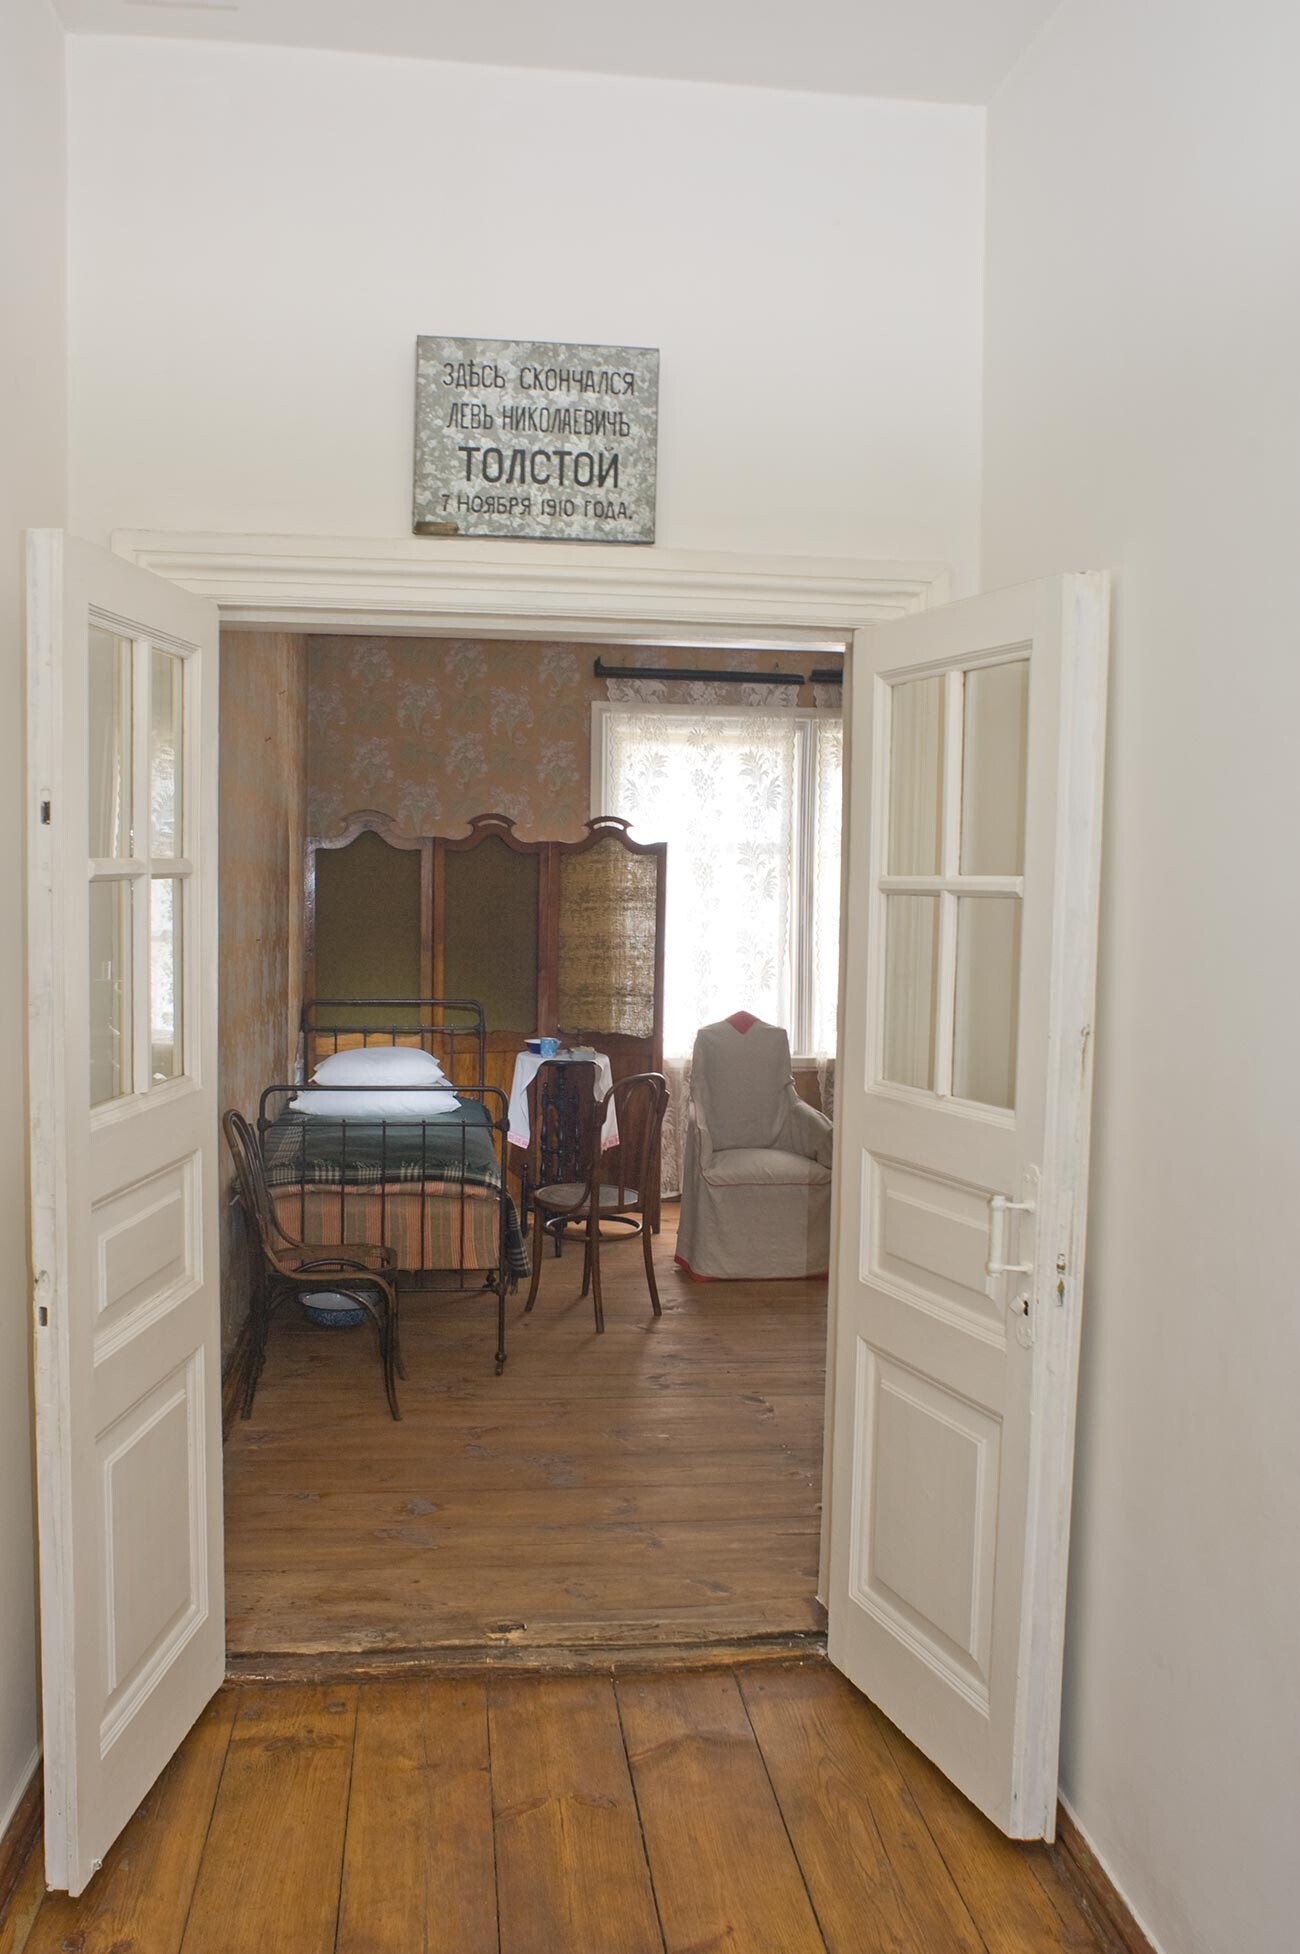 Casa del jefe de estación, interior. Vista hacia la habitación donde se alojó Tolstói. Se colocó un cartel conmemorativo sobre la puerta poco después de su muerte. 10 de agosto de 2013.